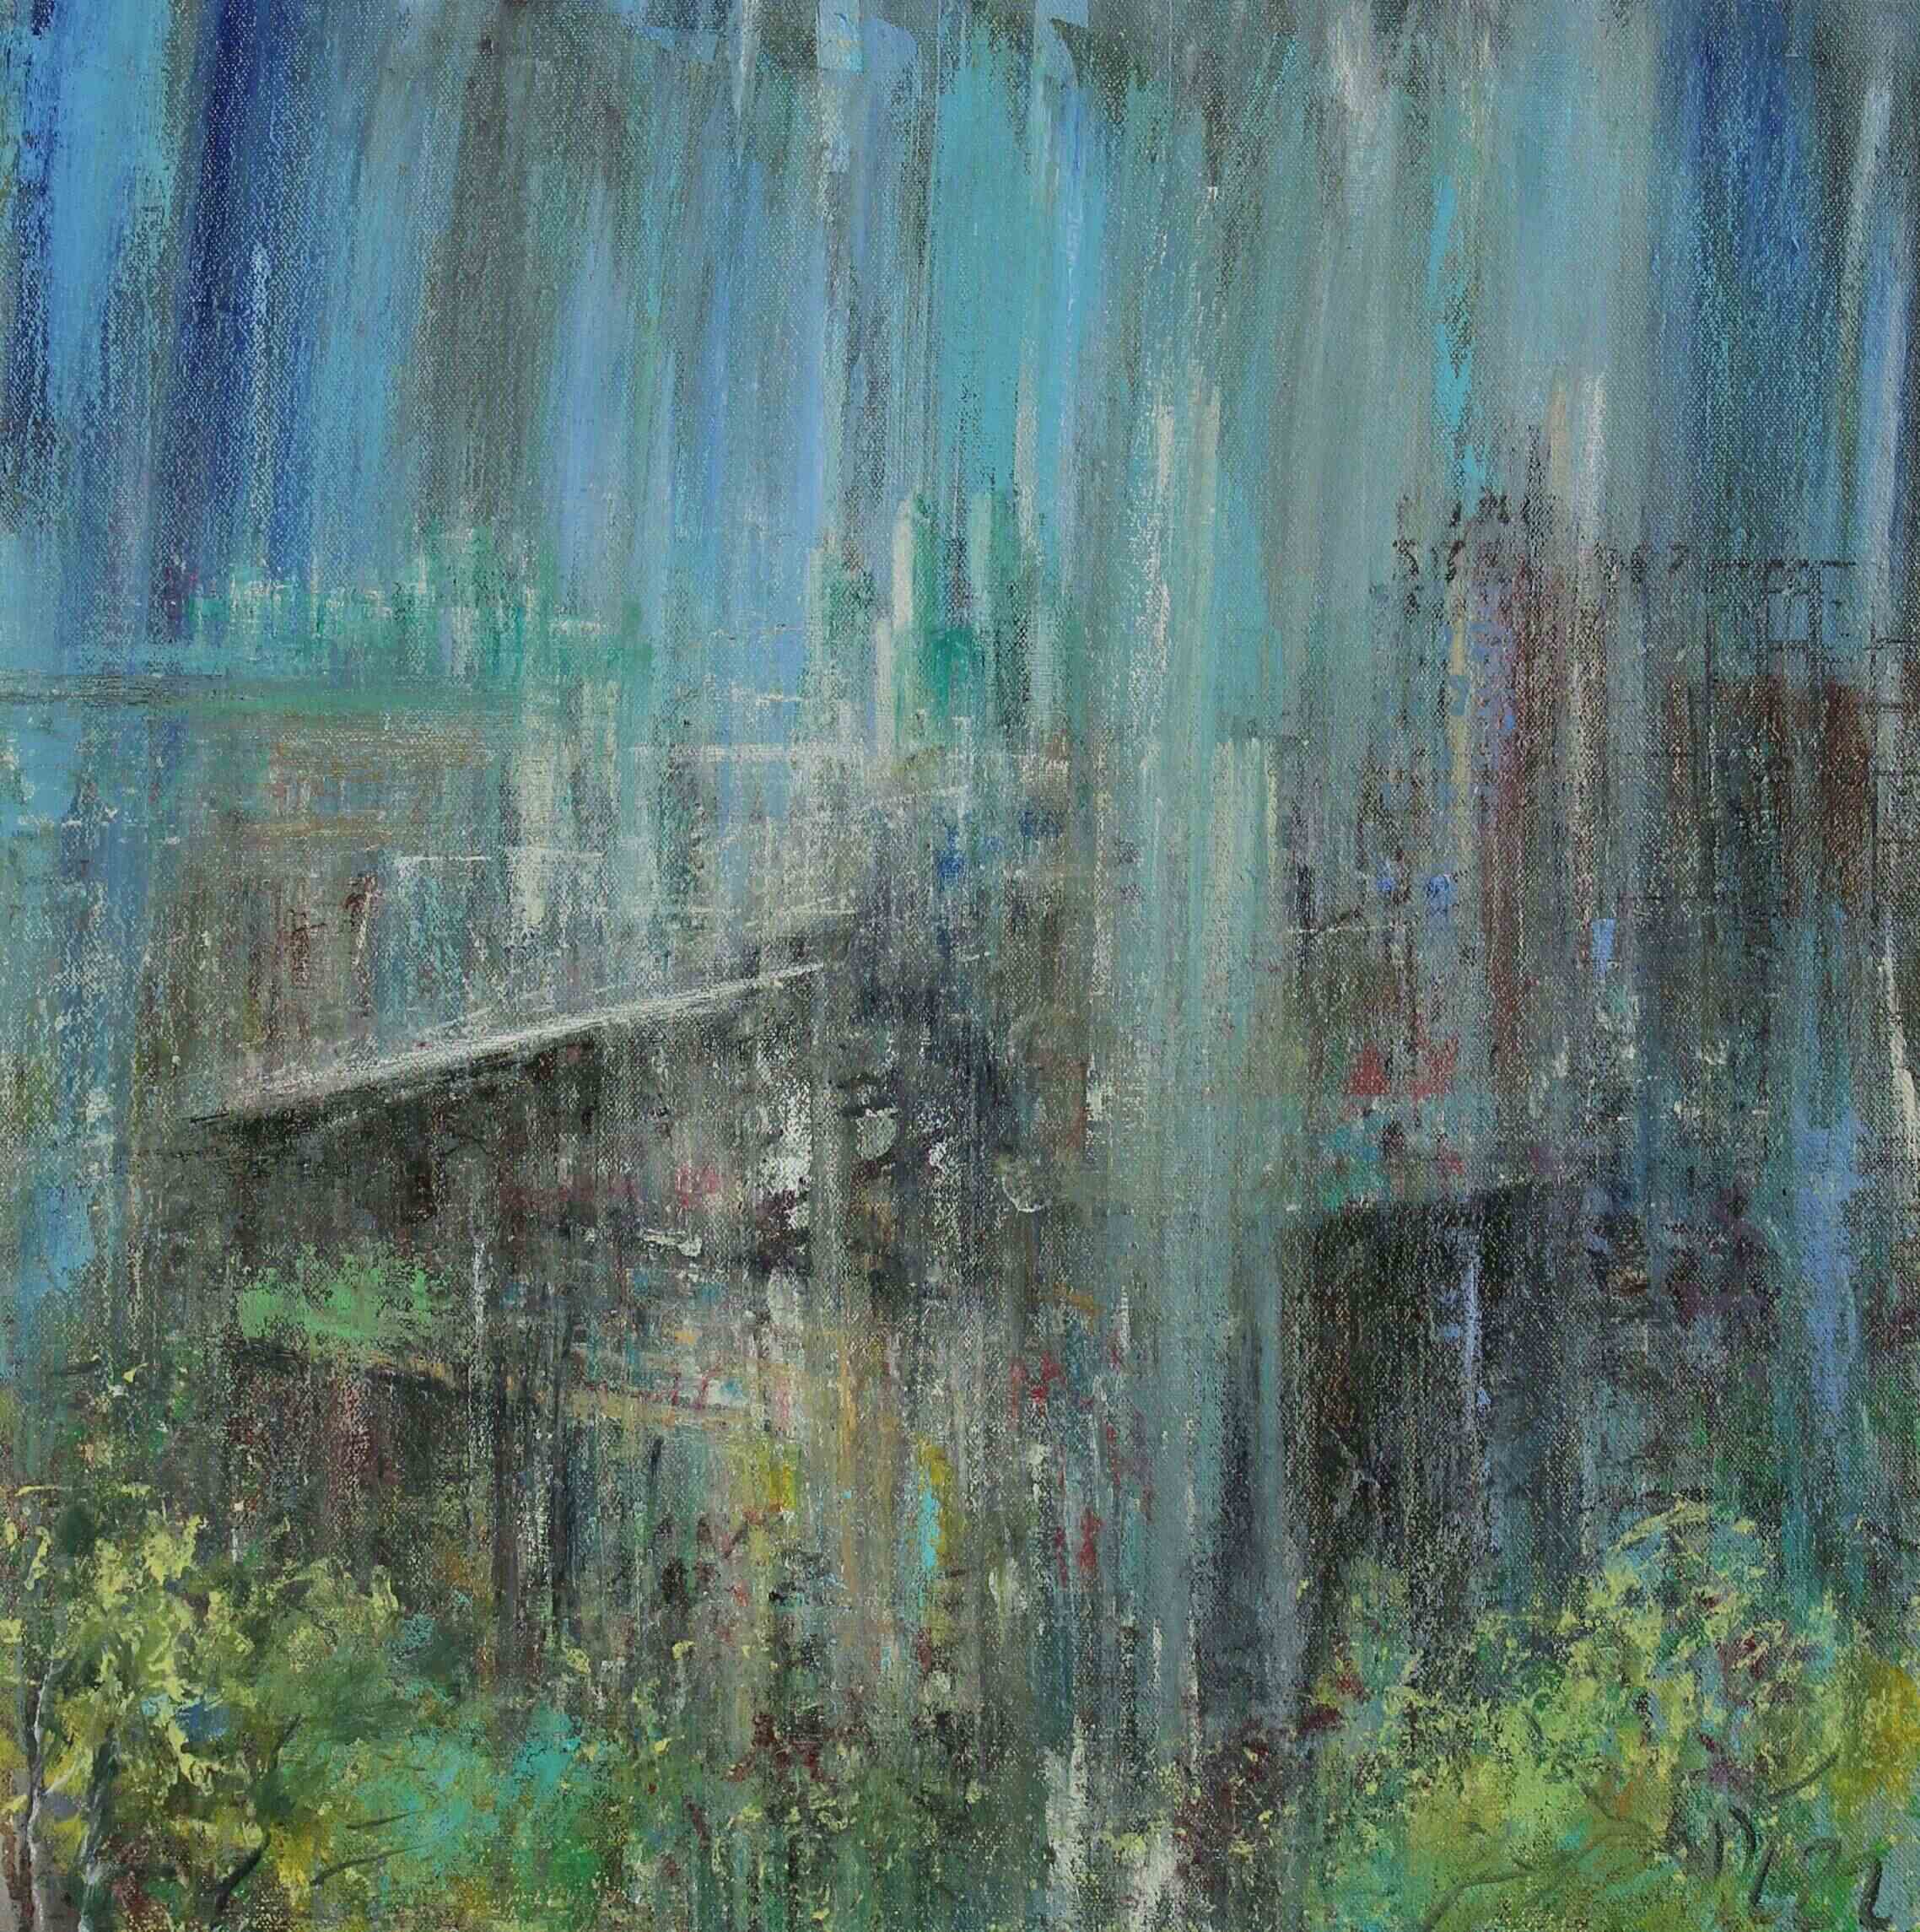 Rain, London. Oil on canvas. 50x50cm.